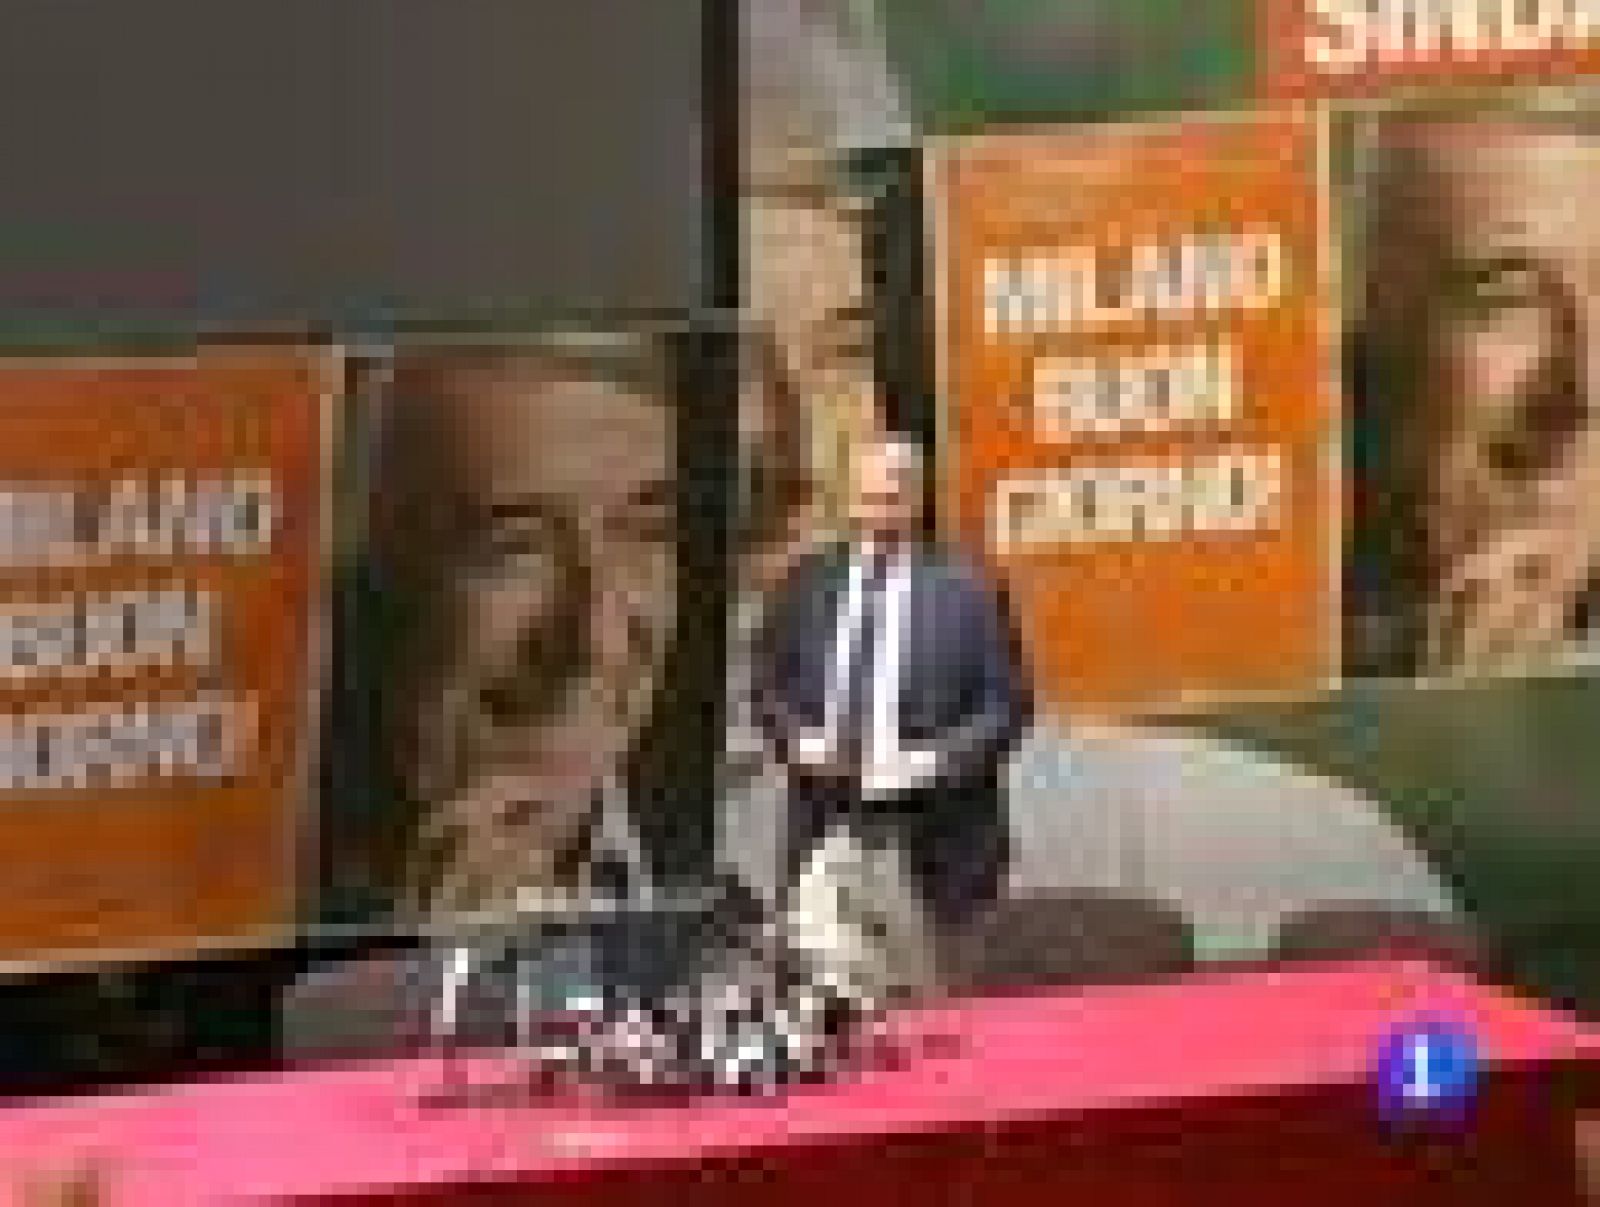 La derrota en Milán, ¿el principio del fin de la era Berlusconi? 